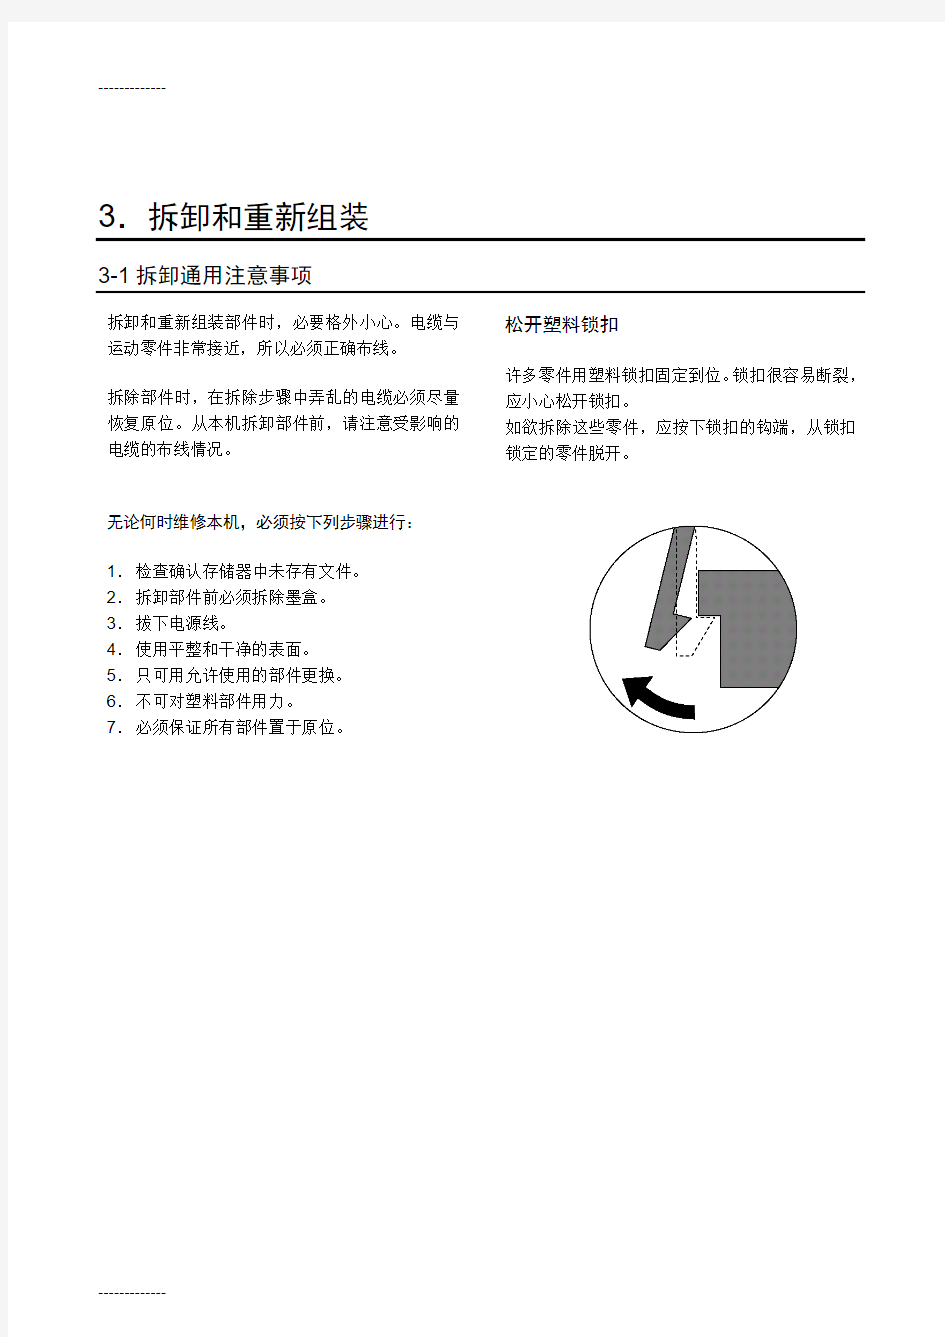 (整理)三星808激光多功能一体机中文维修手册